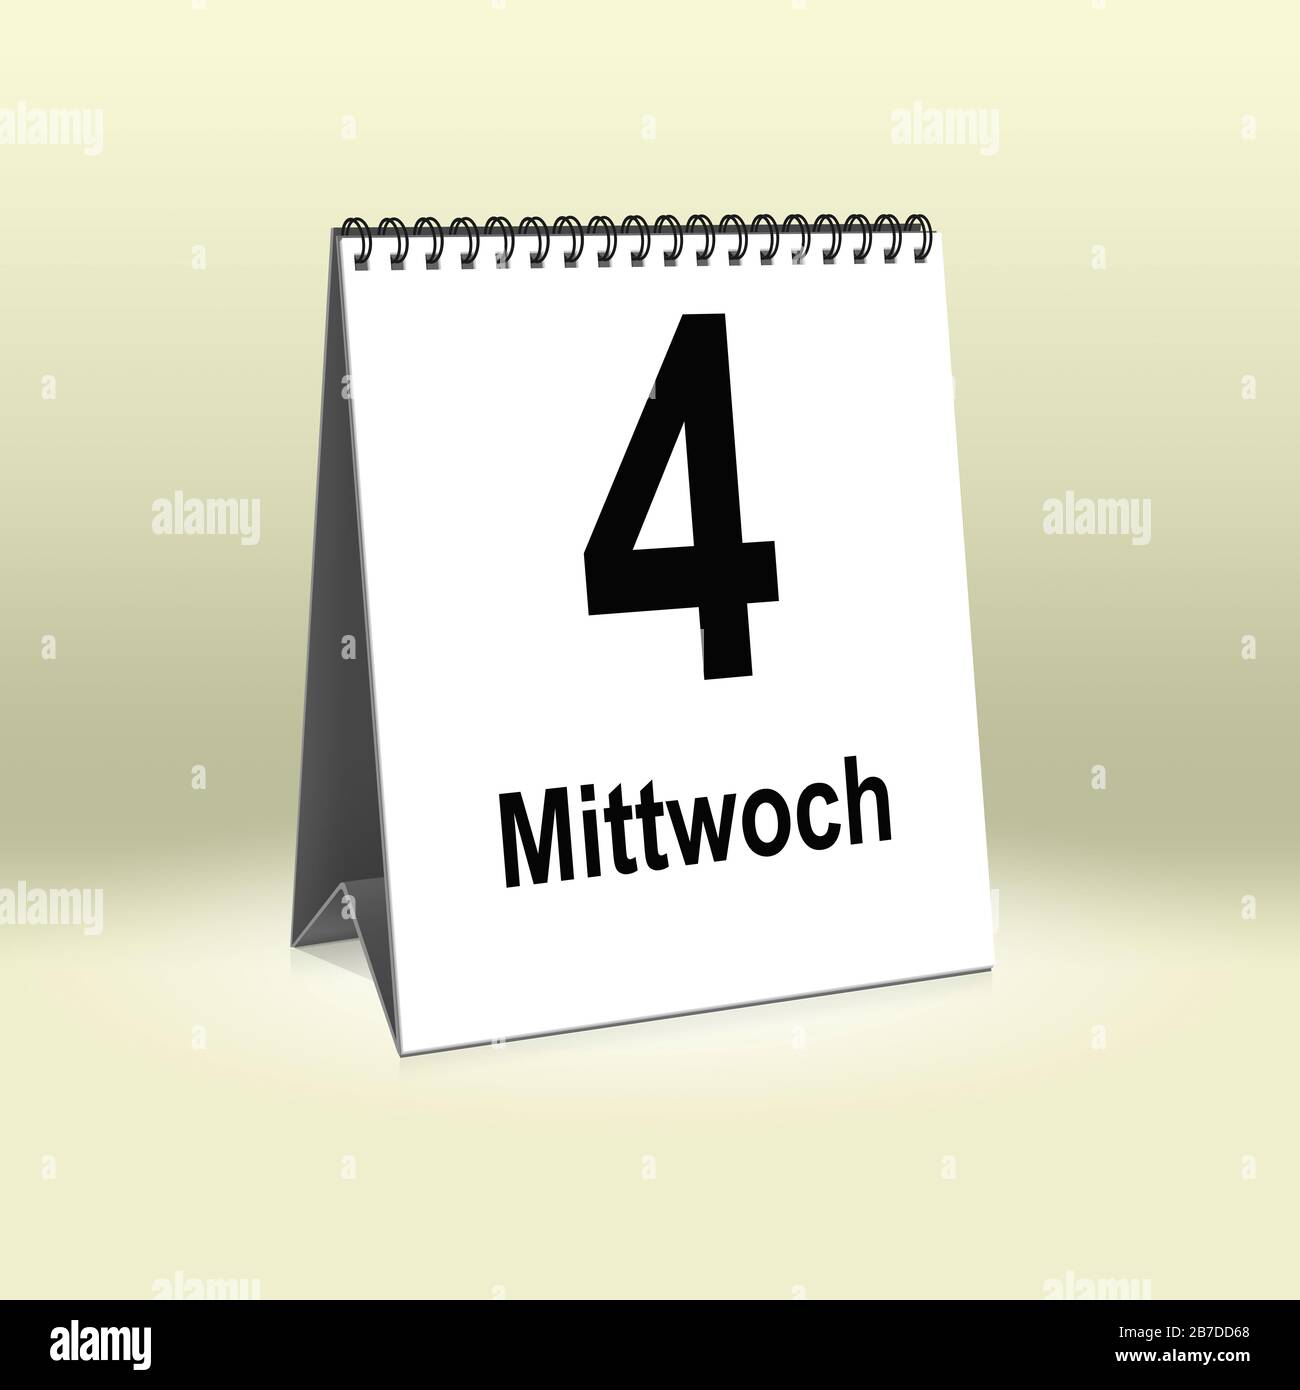 A calendar in German language shows Wednesday 4th | Ein Kalender für den Schreibtisch zeigt Mittwoch 4. Stock Photo